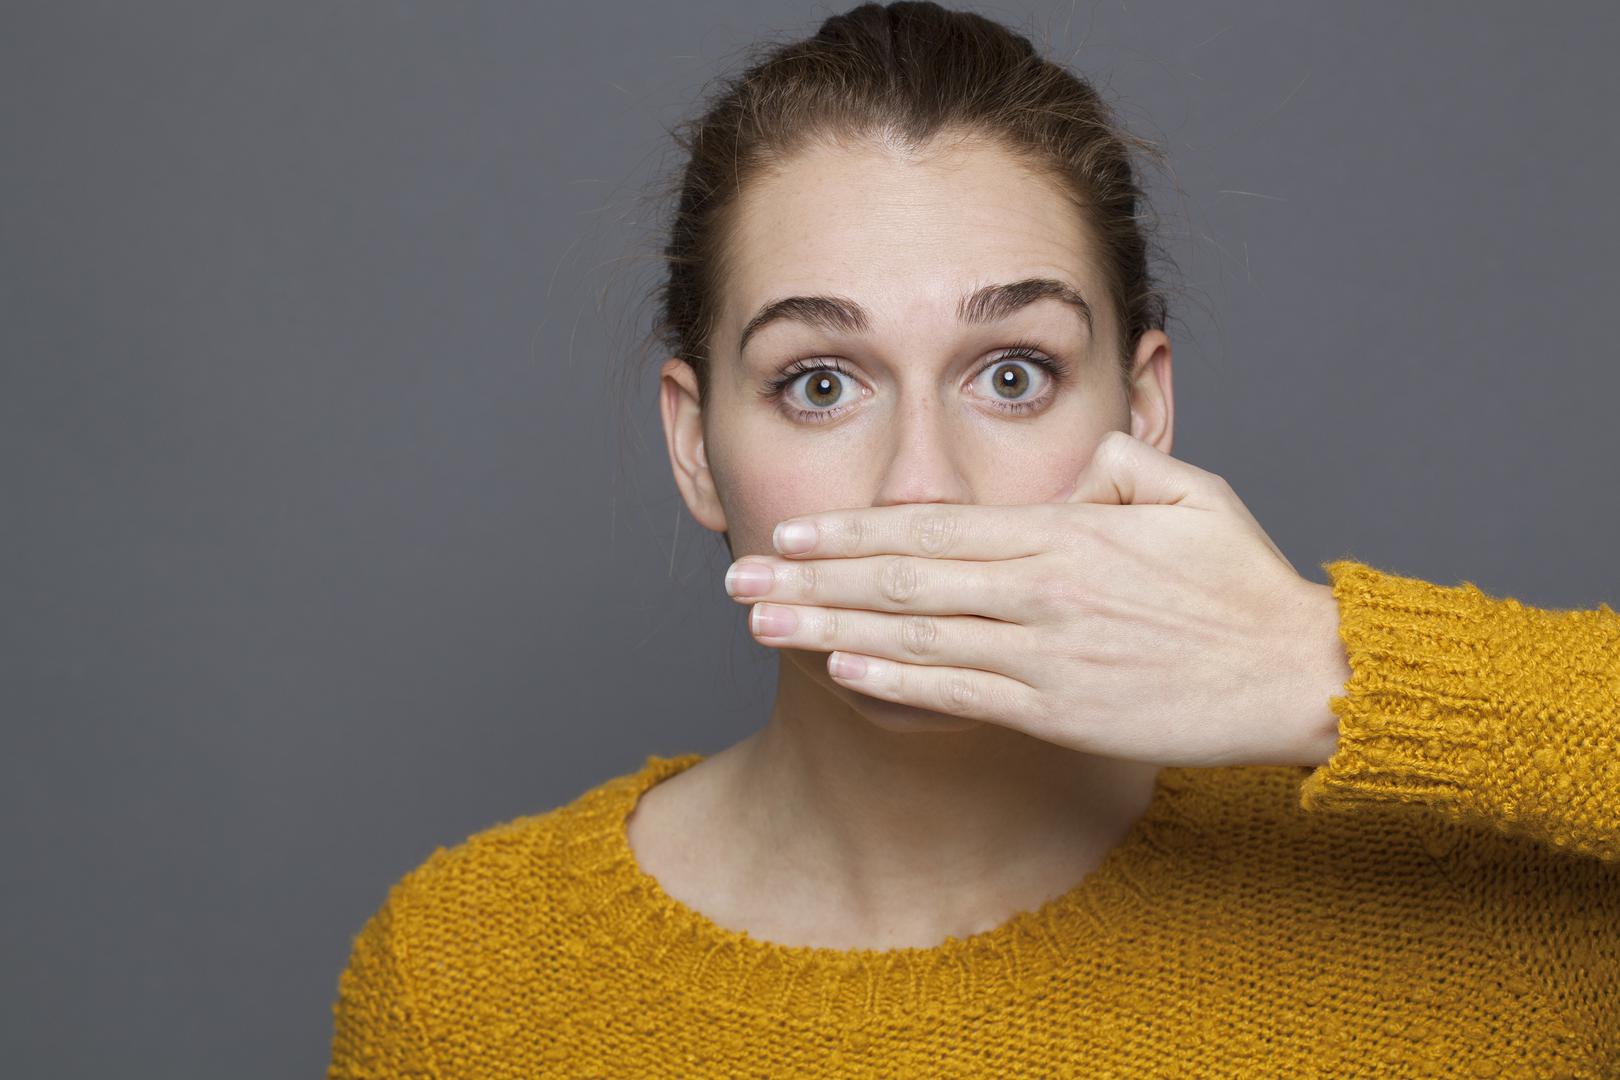 Ako nikako ne možete odgonetnuti zbog čega vam se širi neugodan miris iz usta, ovo su neki od mogućih razloga.